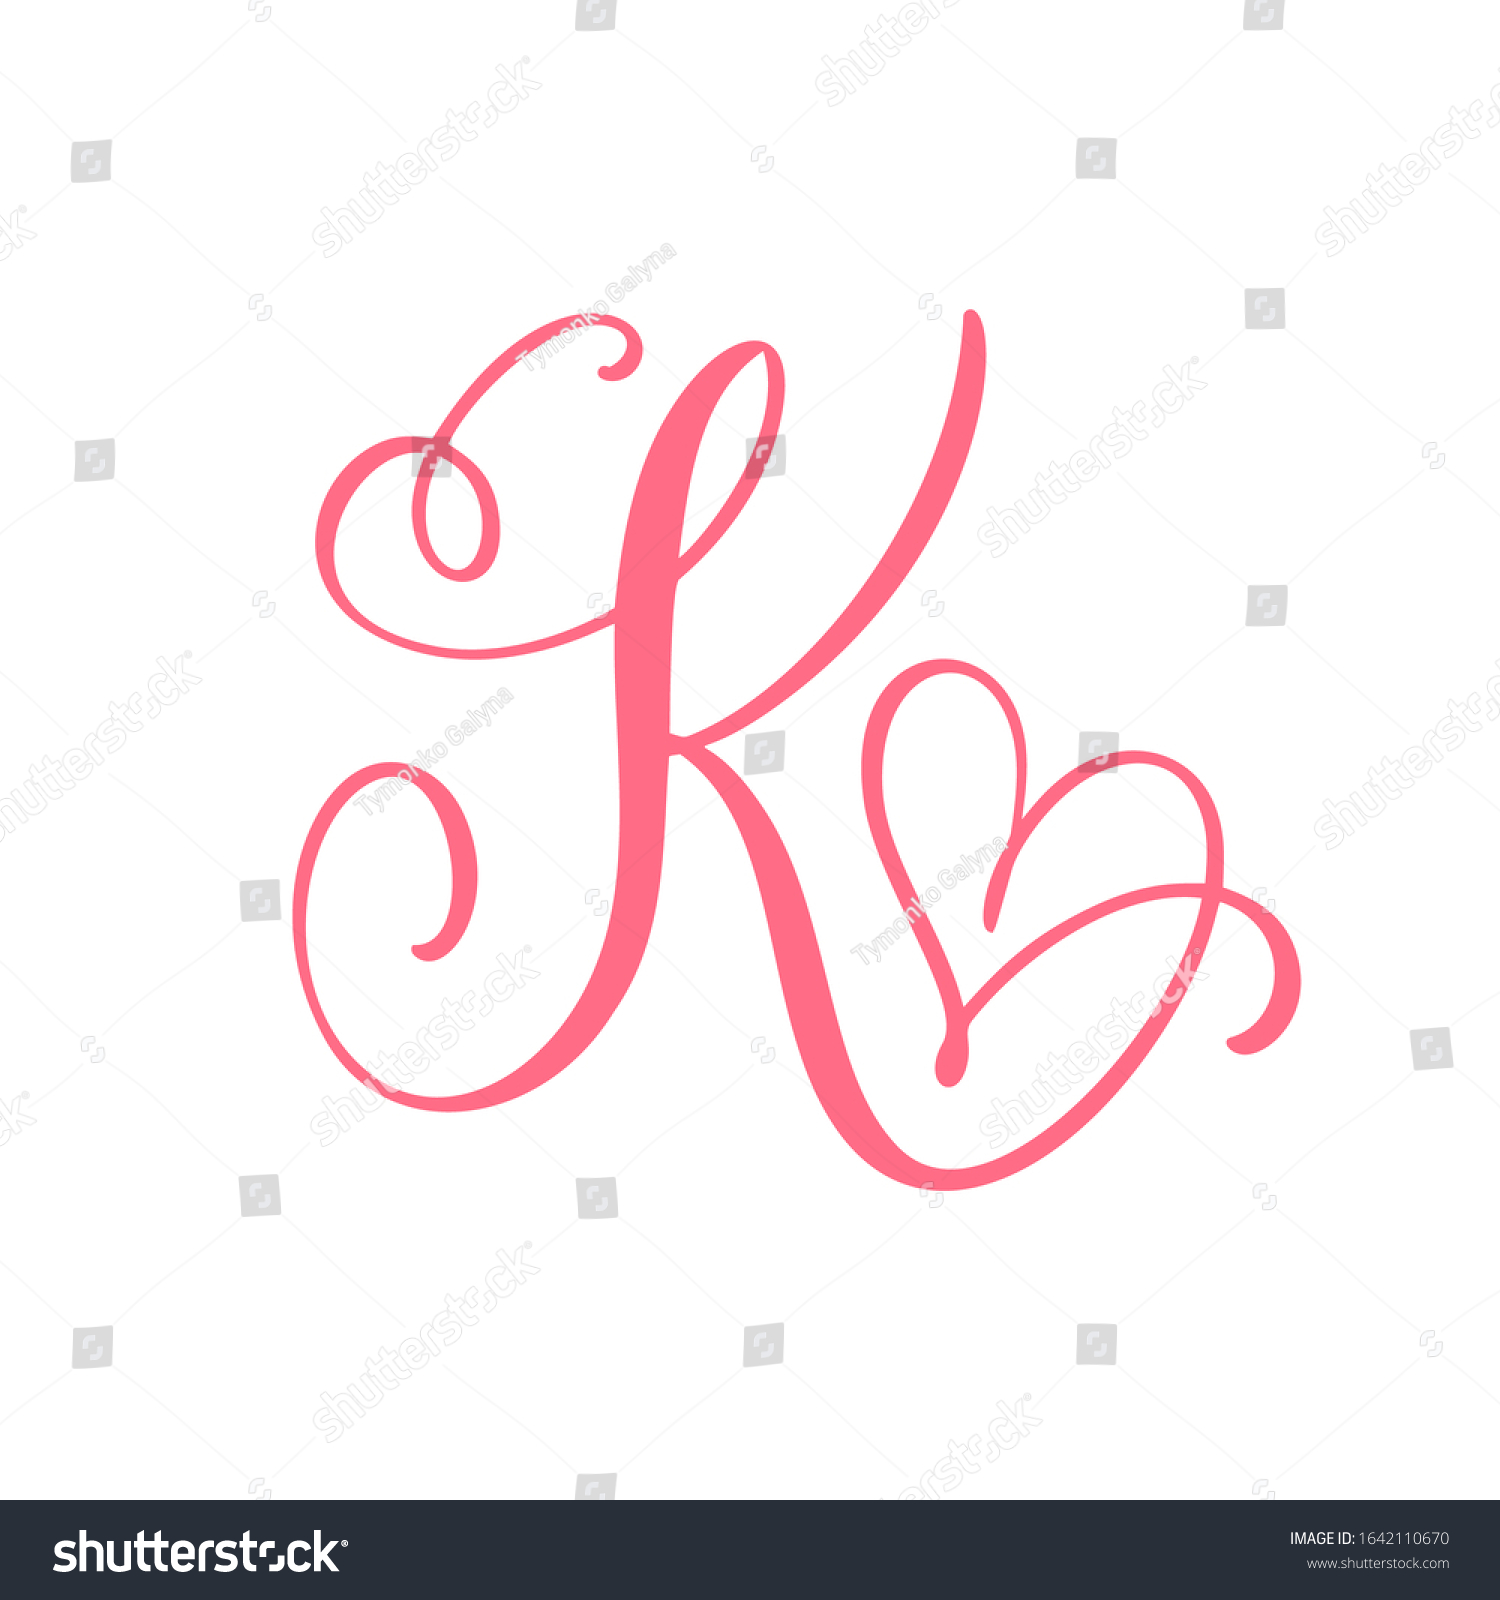 K calligraphy Images, Stock Photos & Vectors | Shutterstock